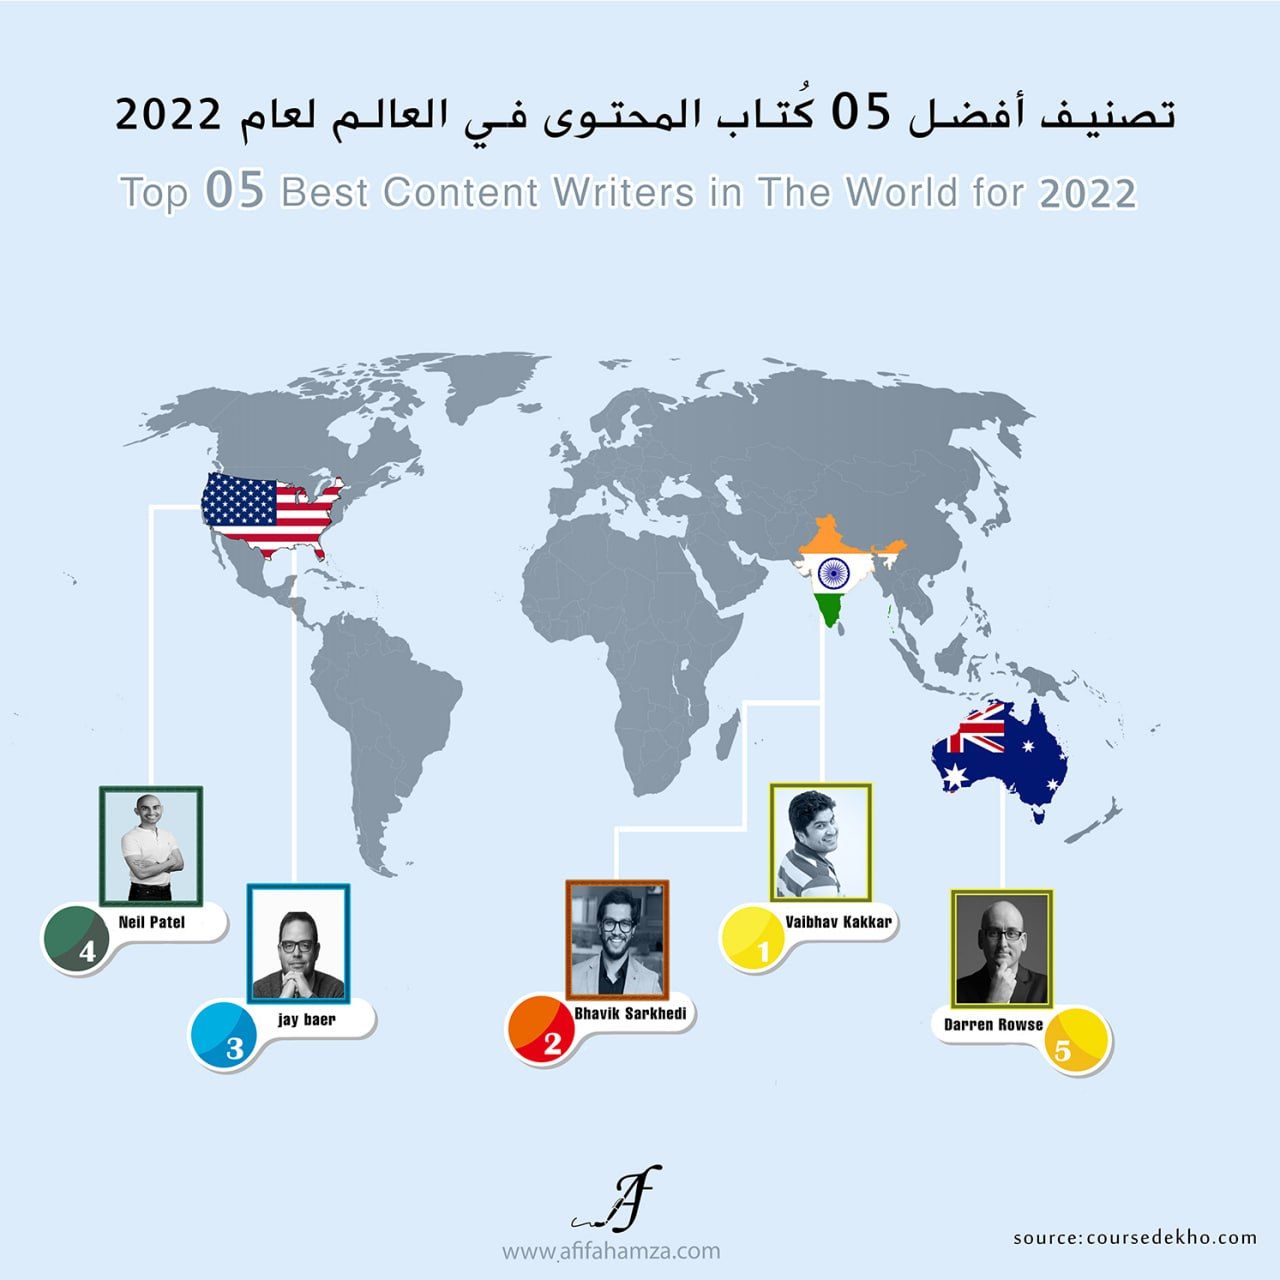 تصنيف أفضل 05 كُتاب المحتوى في العالم لعام 2022